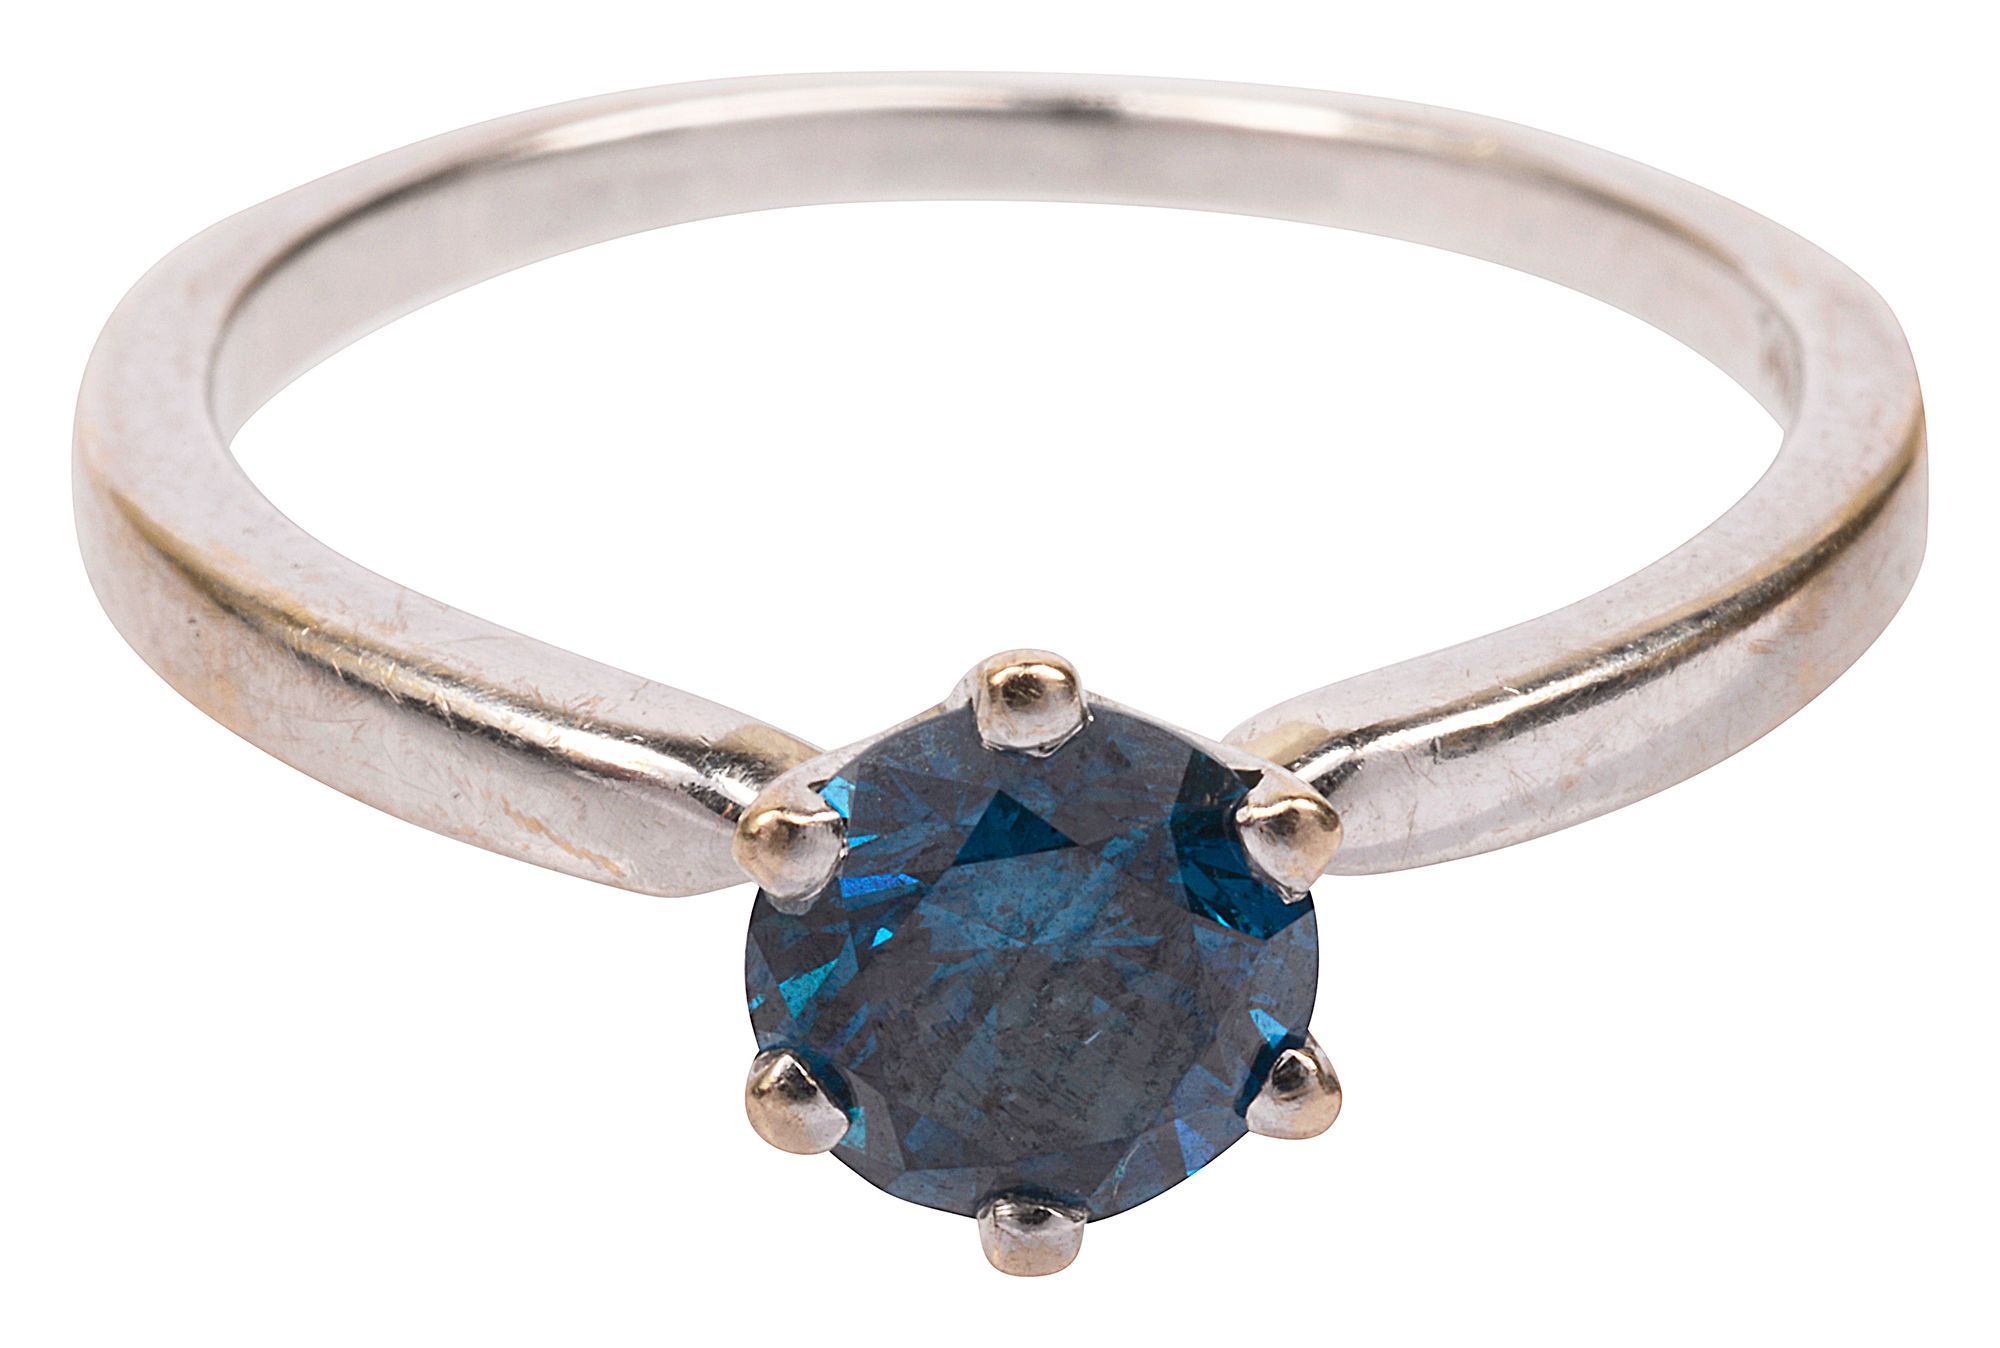 A blue diamond ring